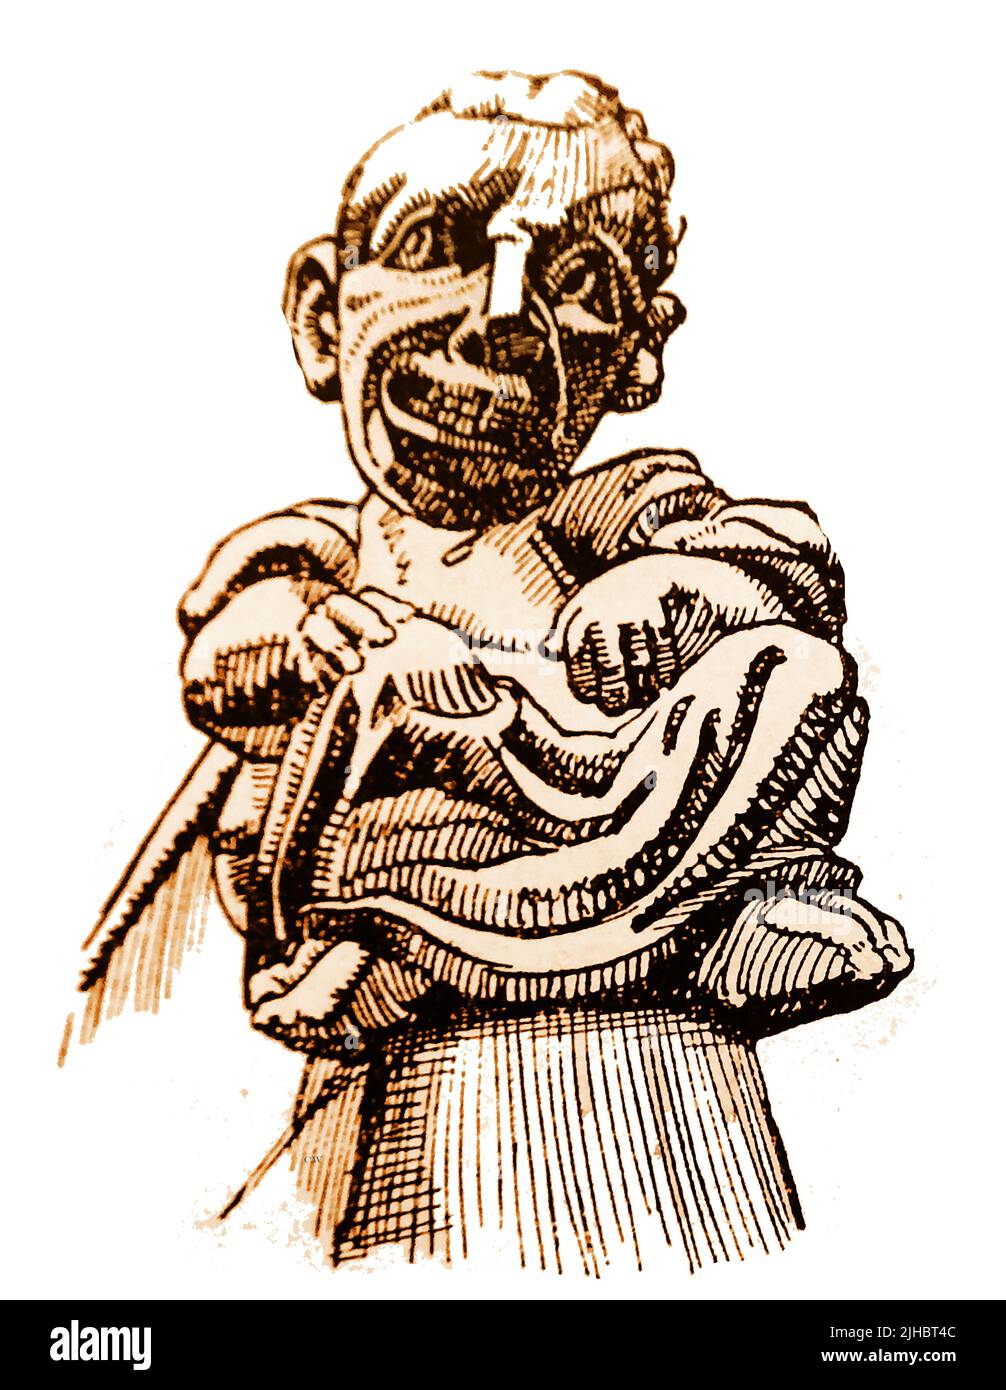 LINCOLN, LINCOLNSHIRE, ENGLAND - Eine Skizze der 30er Jahre einer grotesken Chimäre-Figur in mittelalterlicher Kleidung (Toga) auf der Lincoln Cathedral, England. Stockfoto